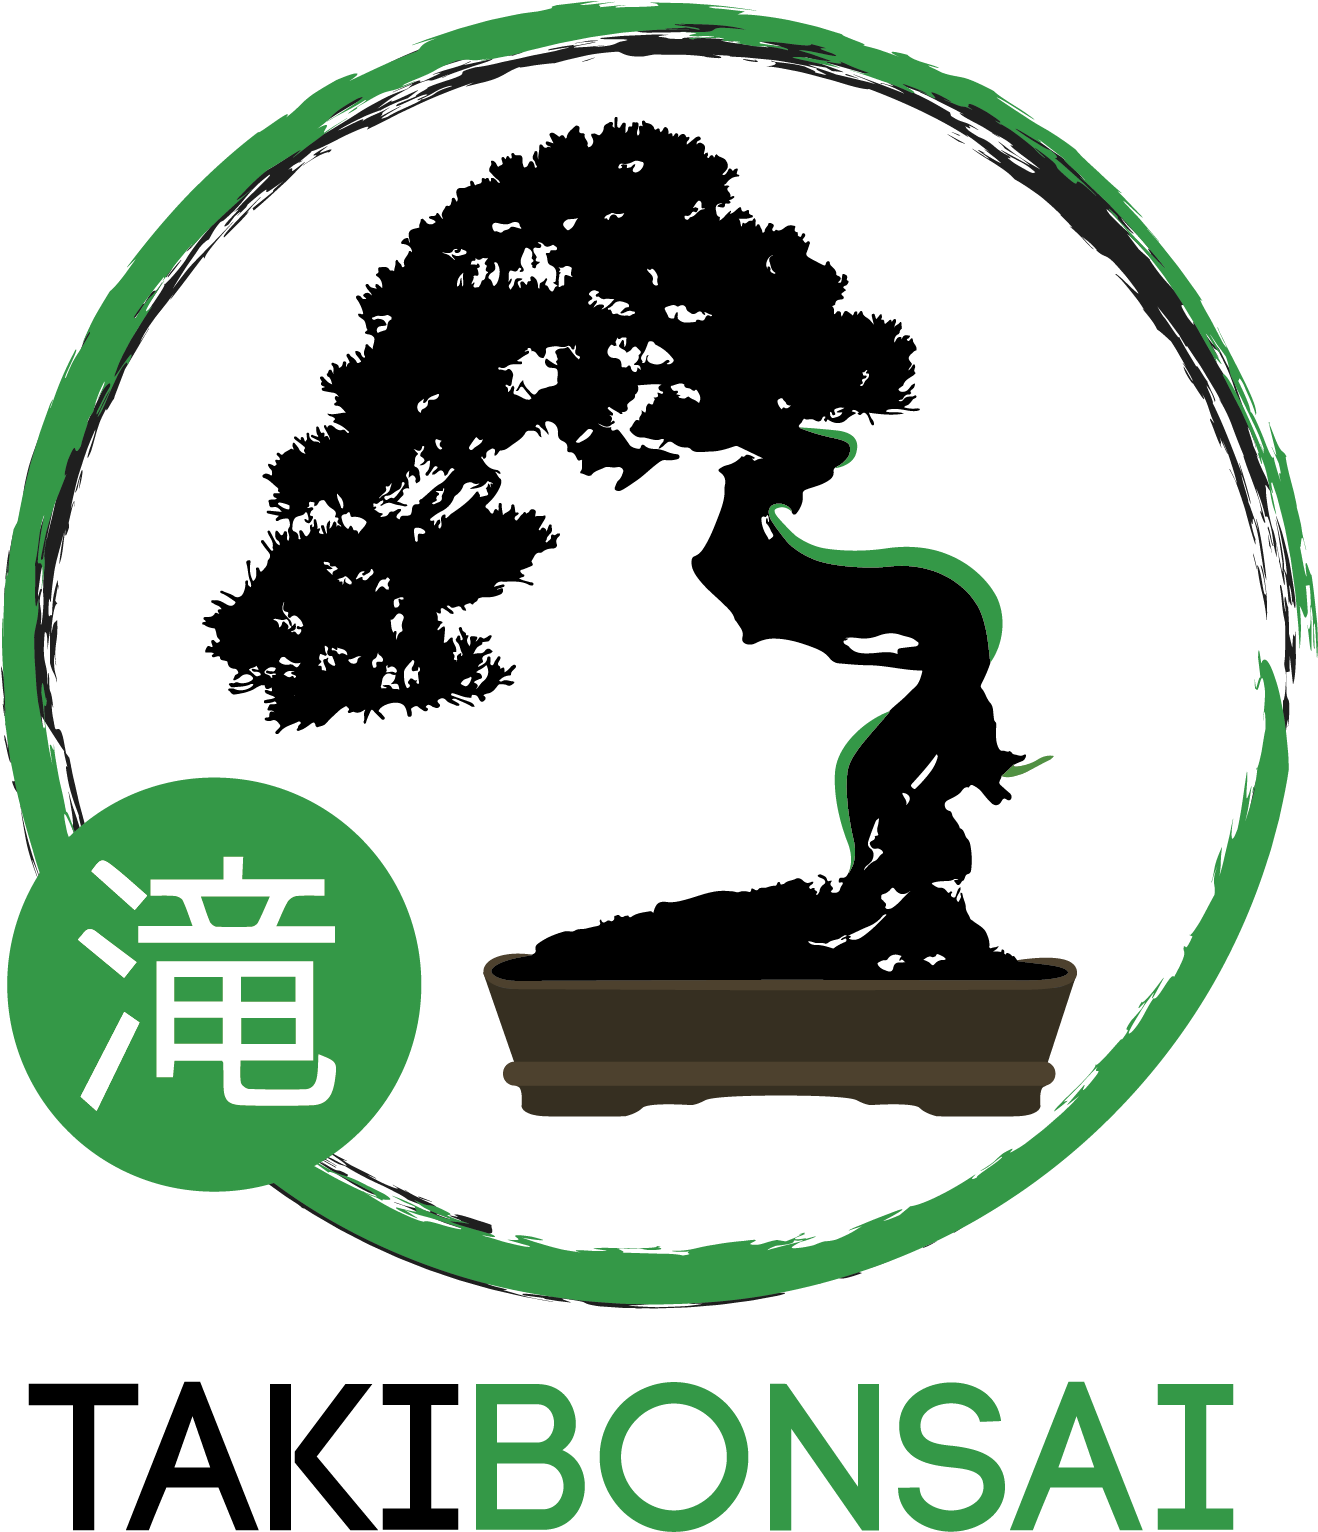 Bonsai (1317x1576)